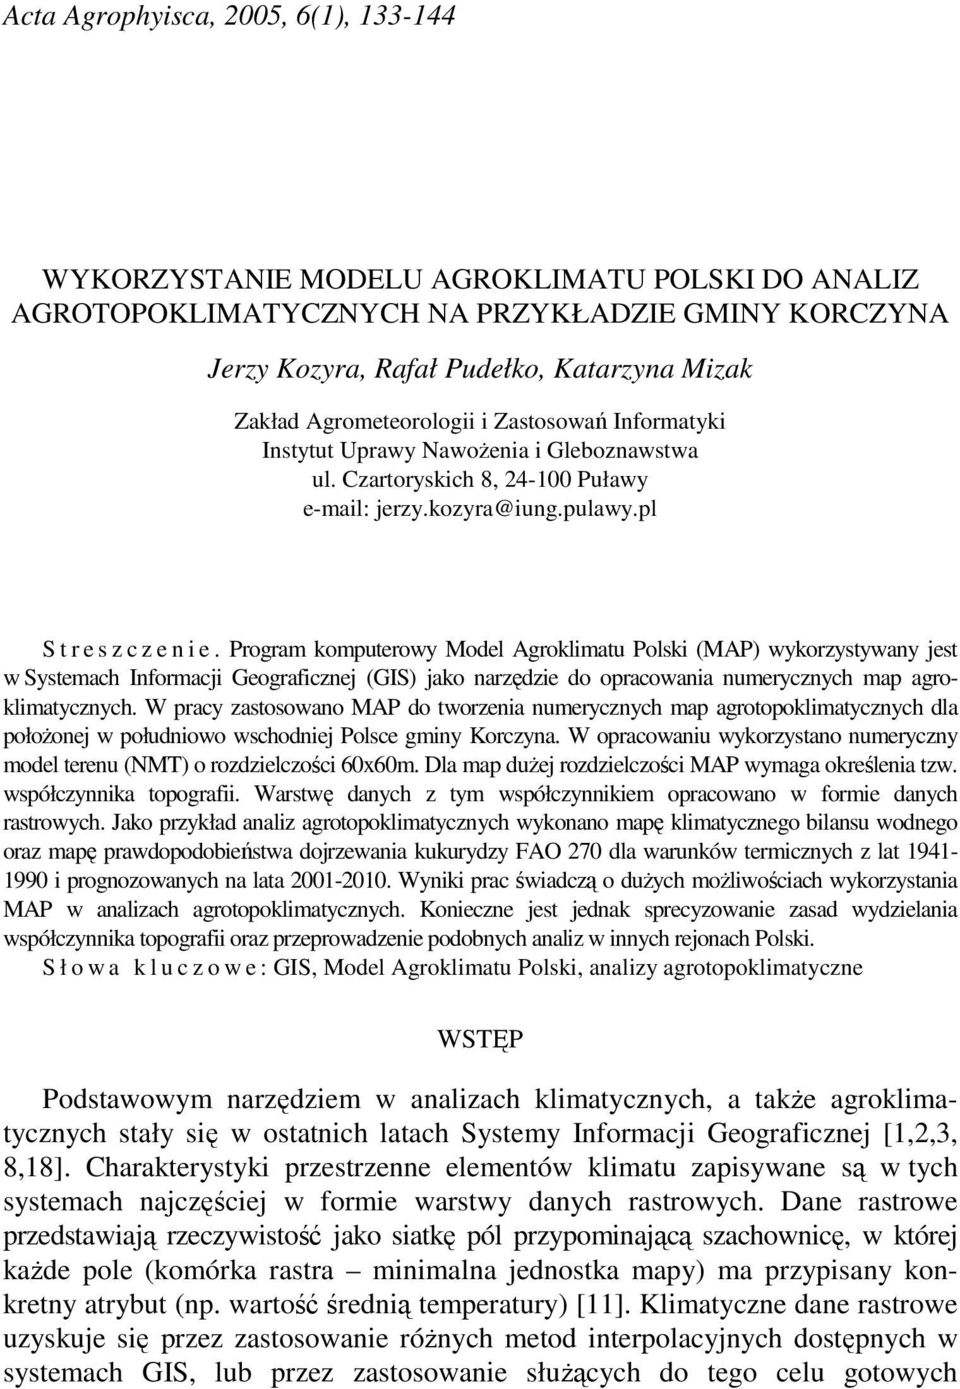 Program komputerowy Model Agroklimatu Polski (MAP) wykorzystywany jest w Systemach Informacji Geograficznej (GIS) jako narzędzie do opracowania numerycznych map agroklimatycznych.